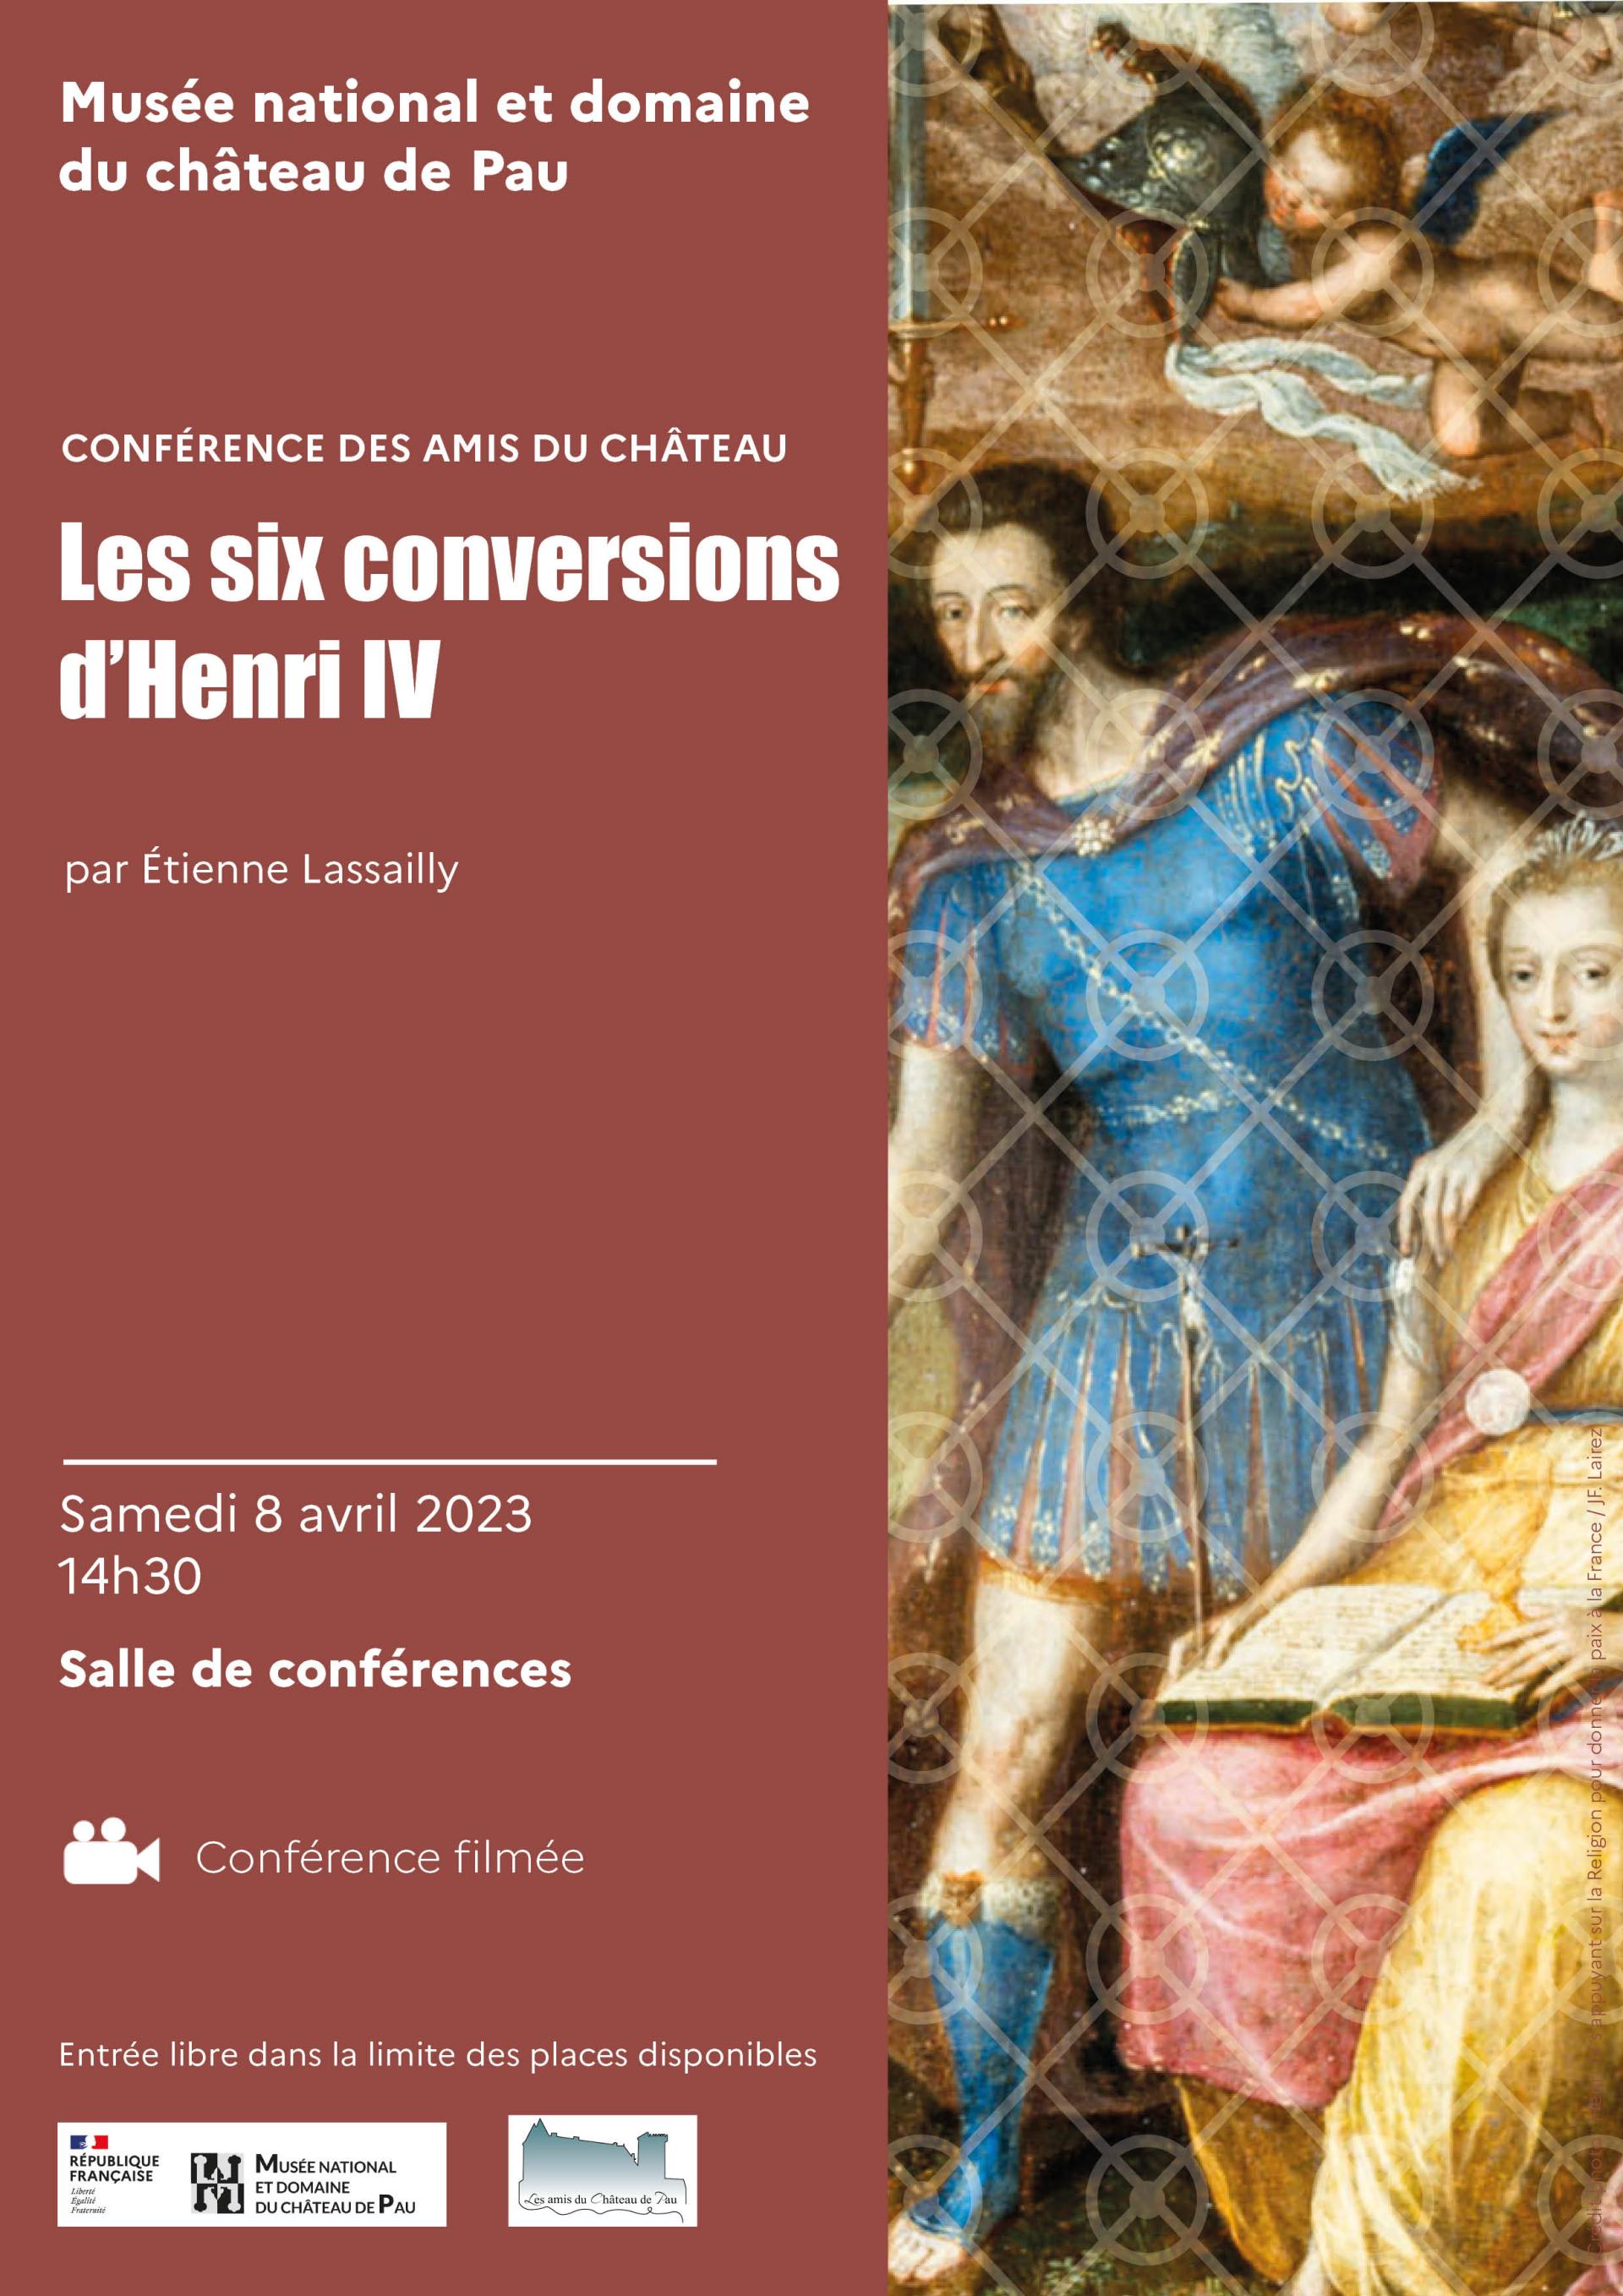 Aff_Conf_des_amis_du_chateau_Six_conversions_Henri_IV